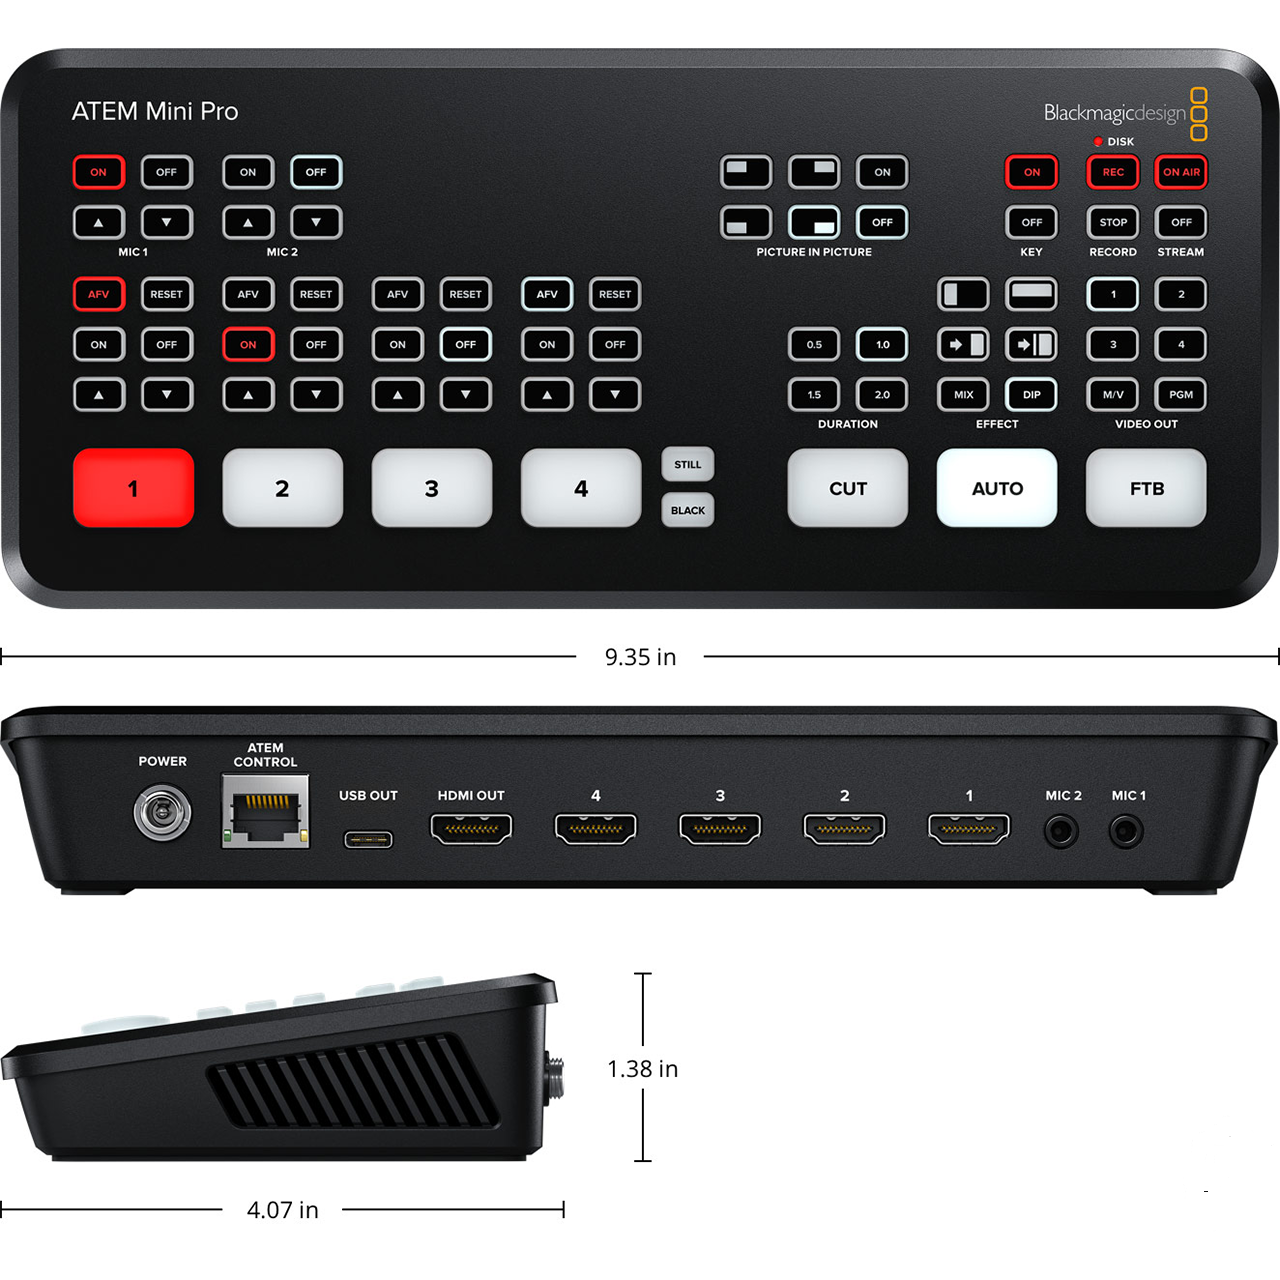 Blackmagic ATEM Mini Pro Multi-Camera, Live Production Switcher